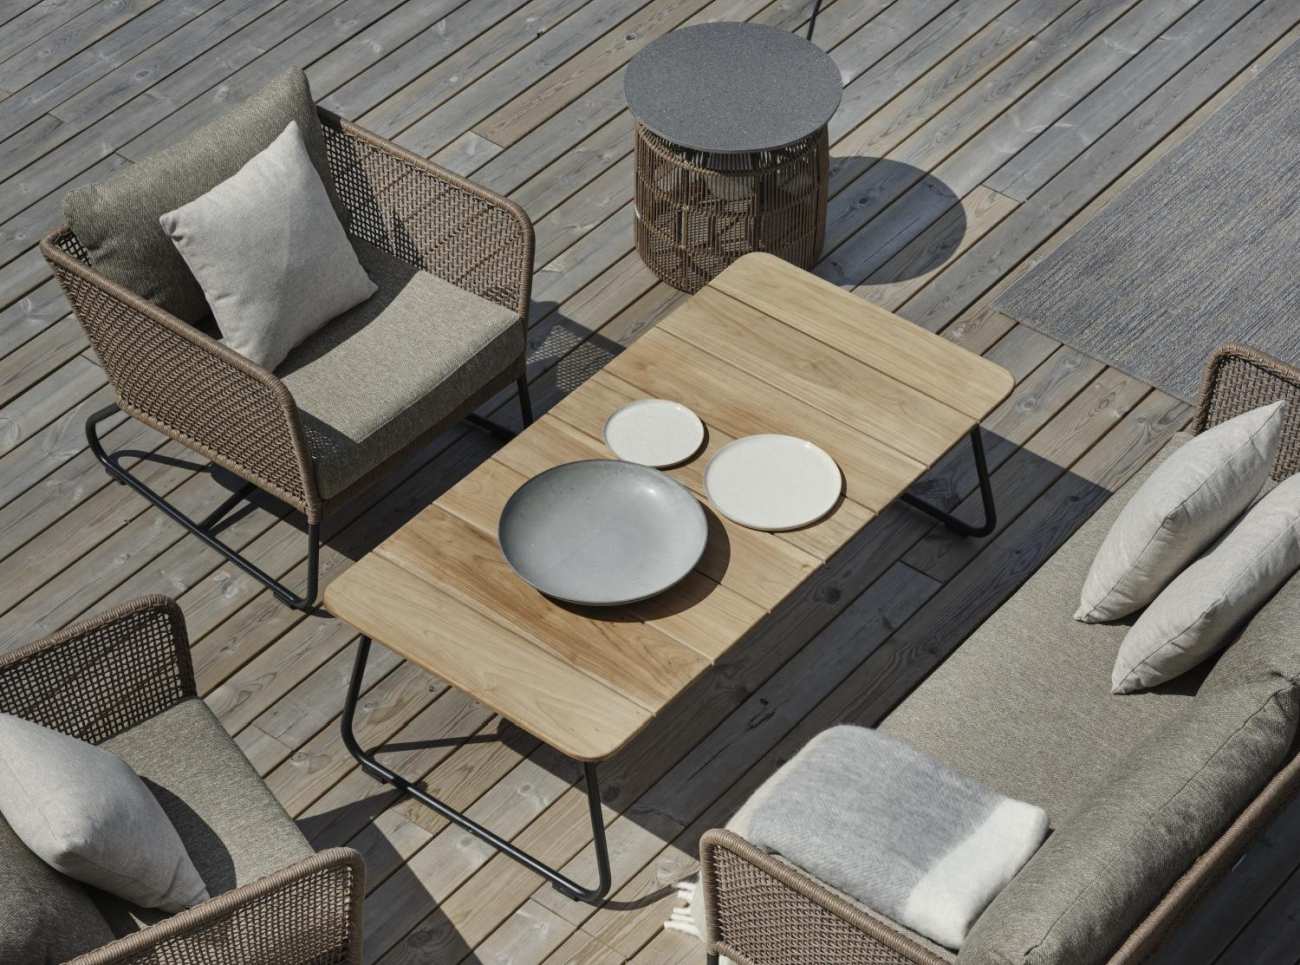 Der Gartenbeistelltisch Nolli überzeugt mit seinem modernen Design. Gefertigt wurde die Tischplatte aus Teakholz und hat einen natürlichen Farbton. Das Gestell ist auch aus Metall und hat eine schwarze Farbe. Der Tisch besitzt eine Länge von 140 cm.